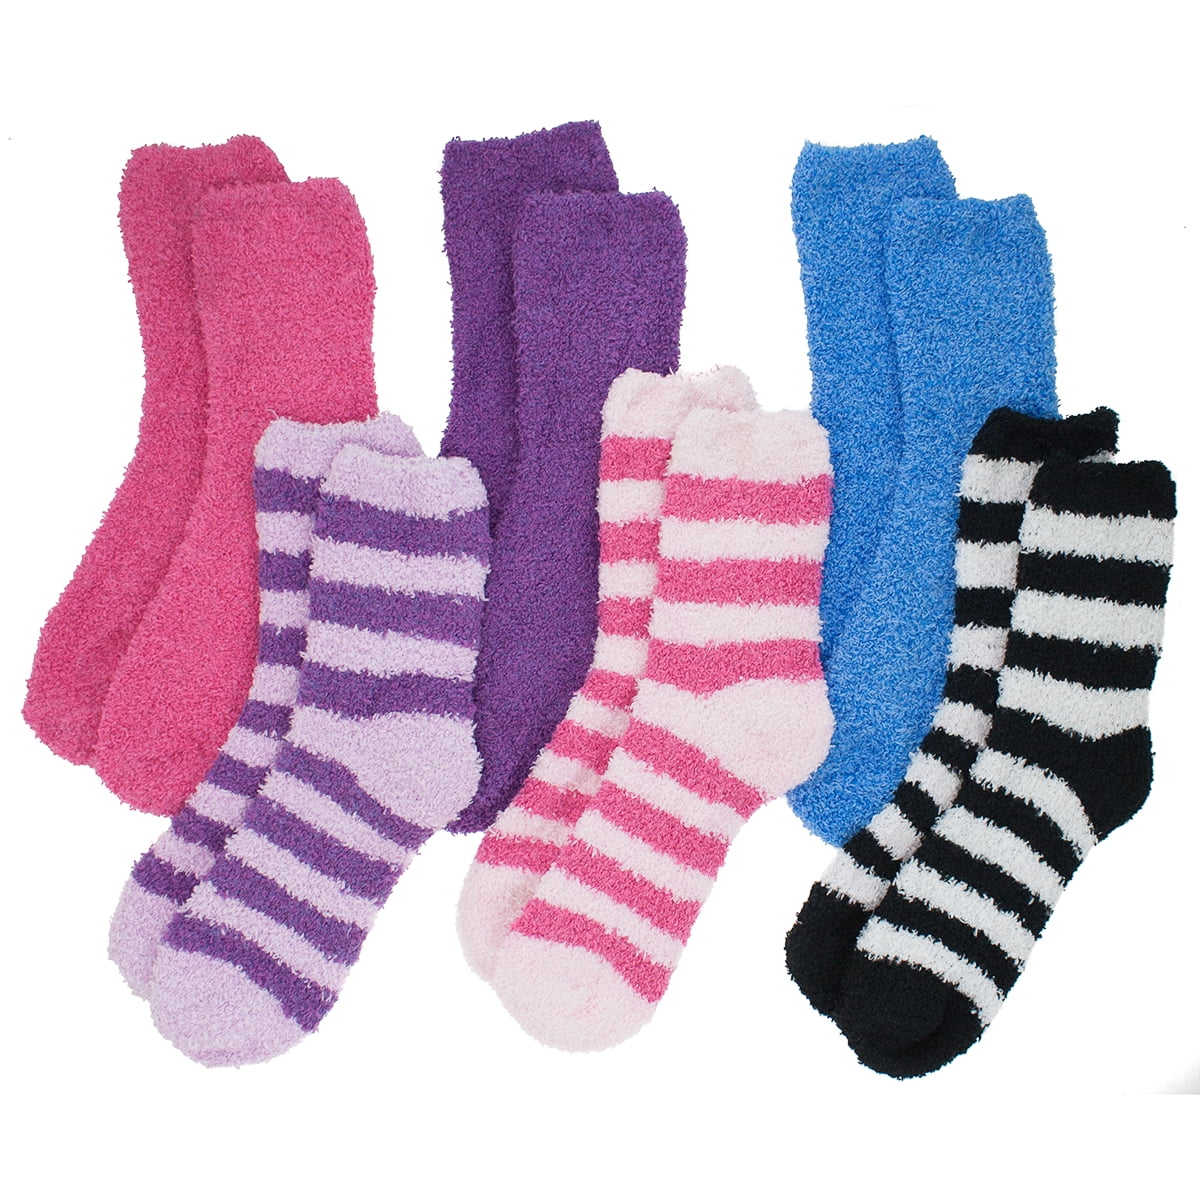 water resistant socks walmart